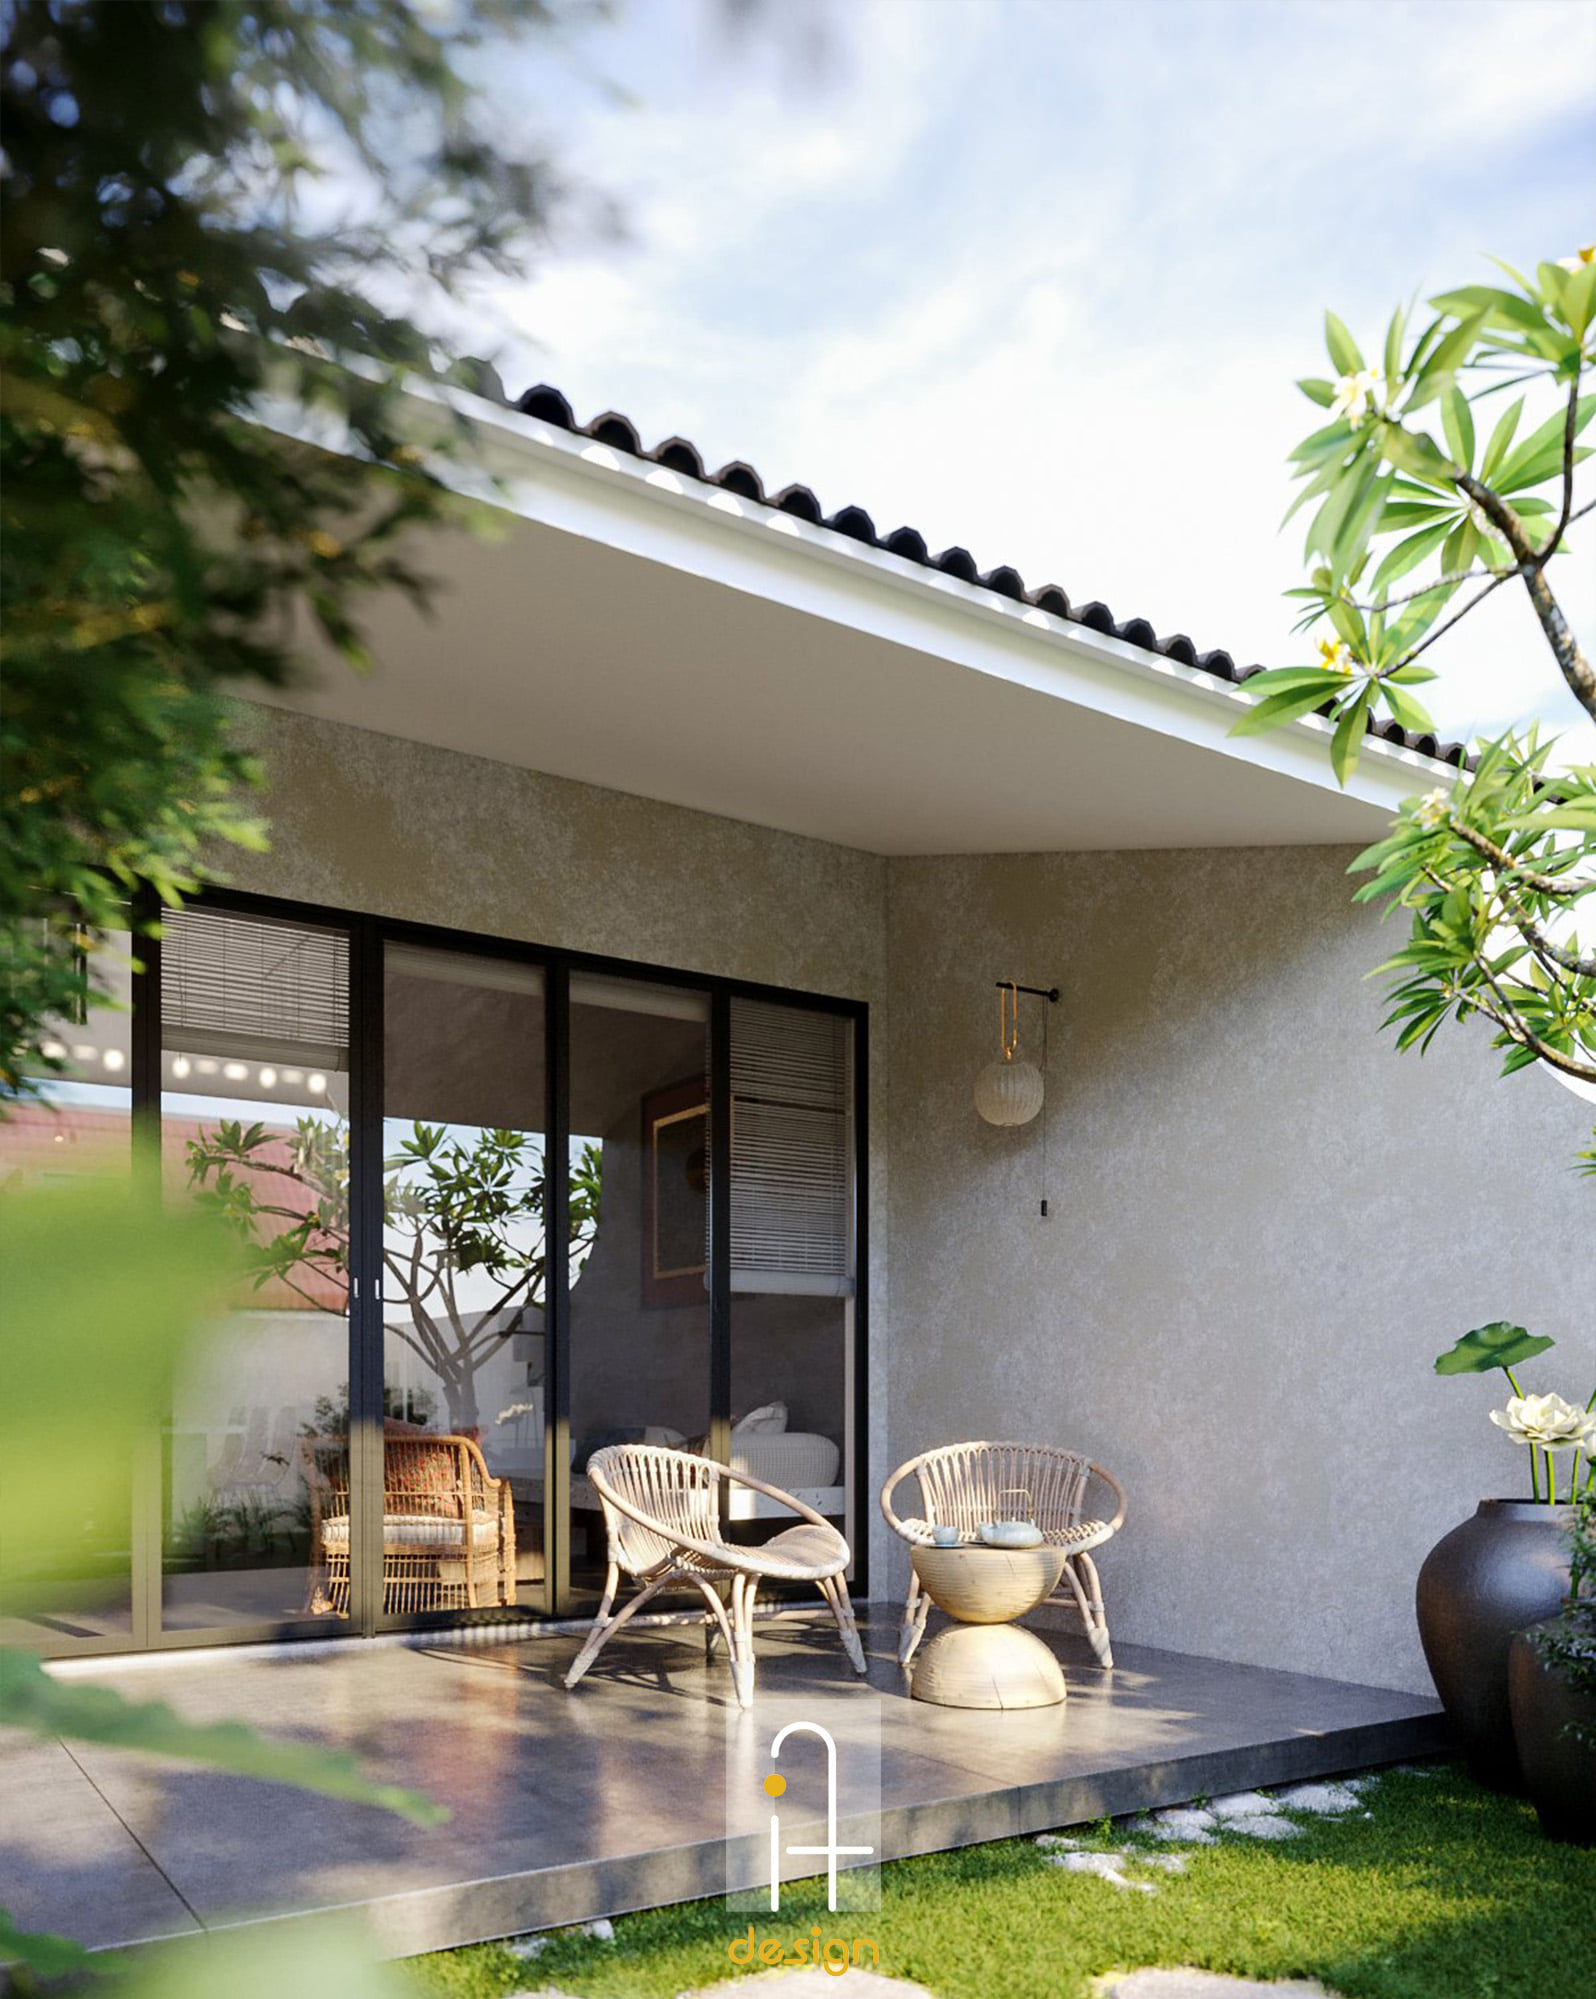 Thiết kế Biệt Thự tại Quảng Nam TAM KỲ HOUSE – NÉT MỘC MẠC NƠI PHỐ THỊ 1638333745 0